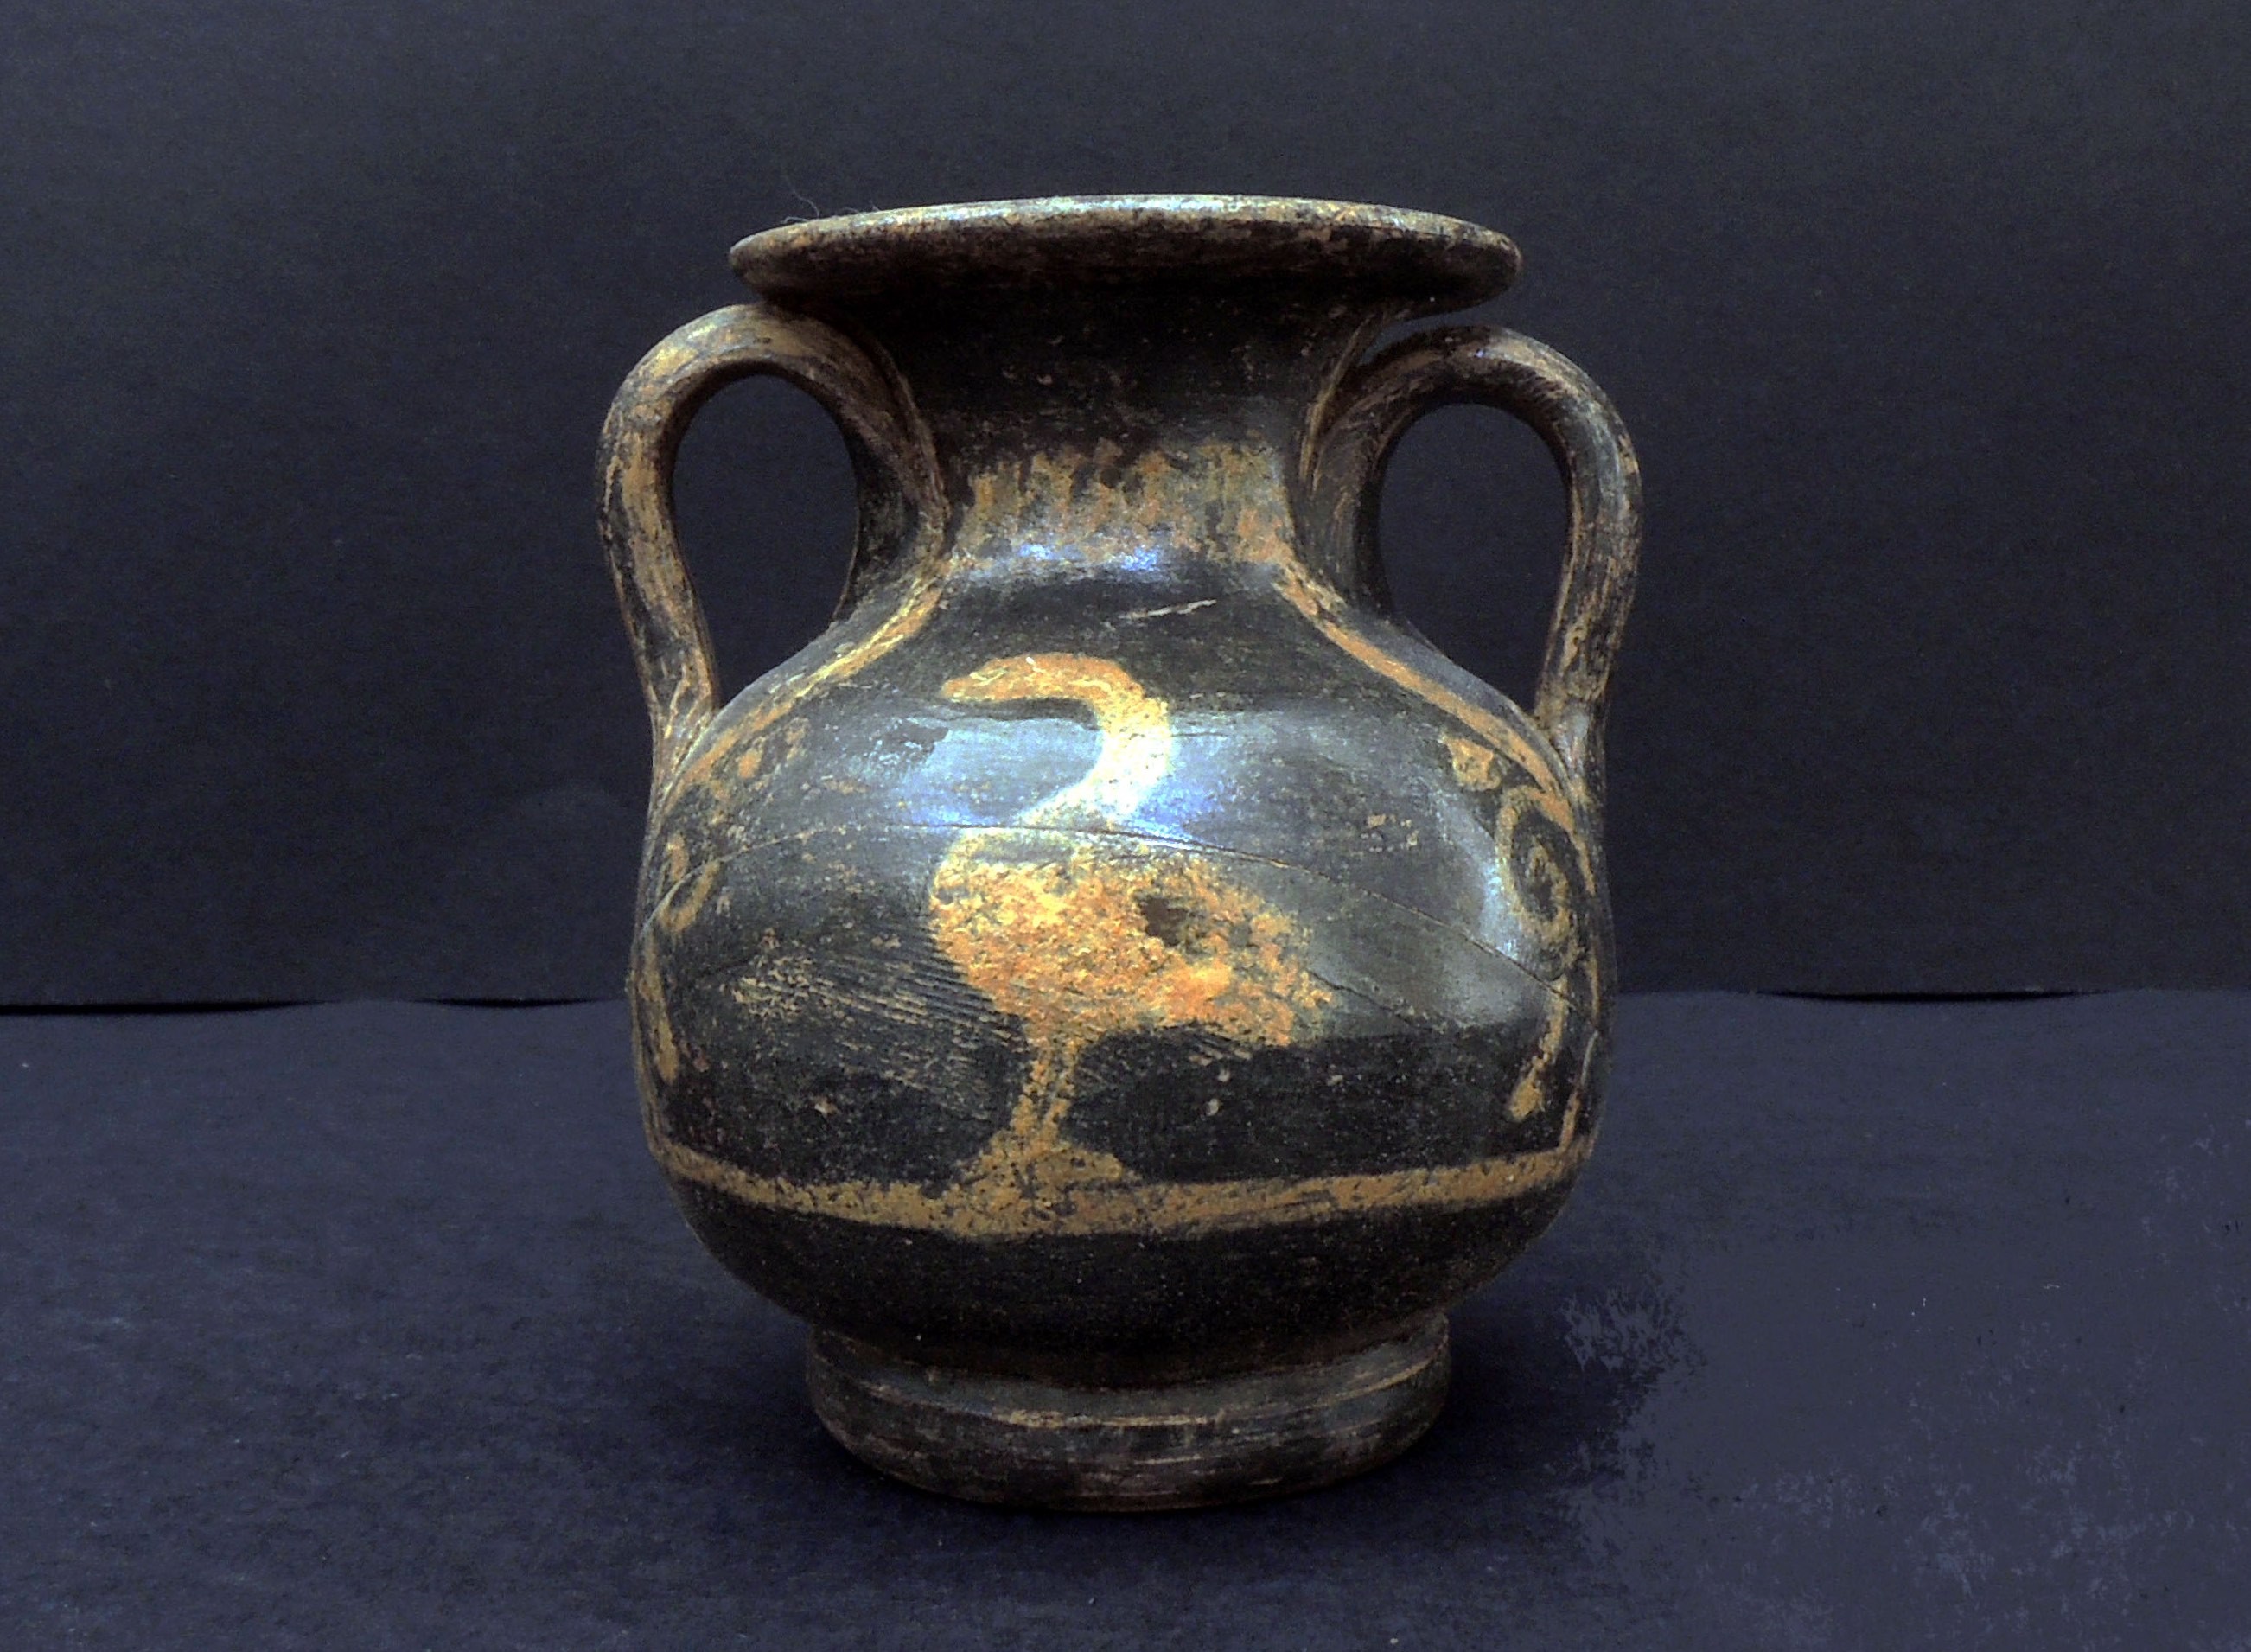 Vaso encontrado no sítio arqueológico (Foto: S OPRINTENDENZA SPECIALE DI ROMA)